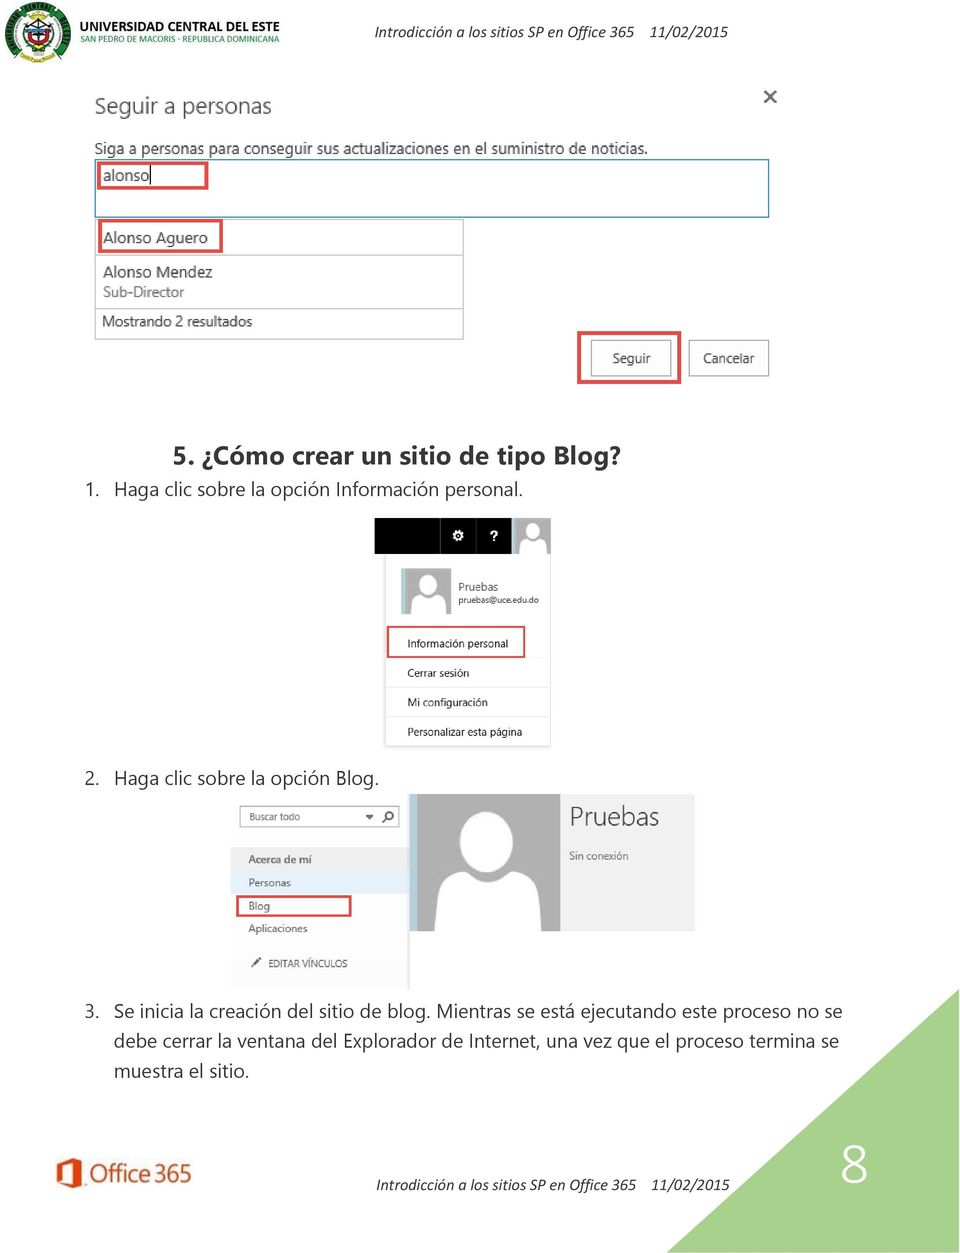 Haga clic sobre la opción Blog. 3. Se inicia la creación del sitio de blog.